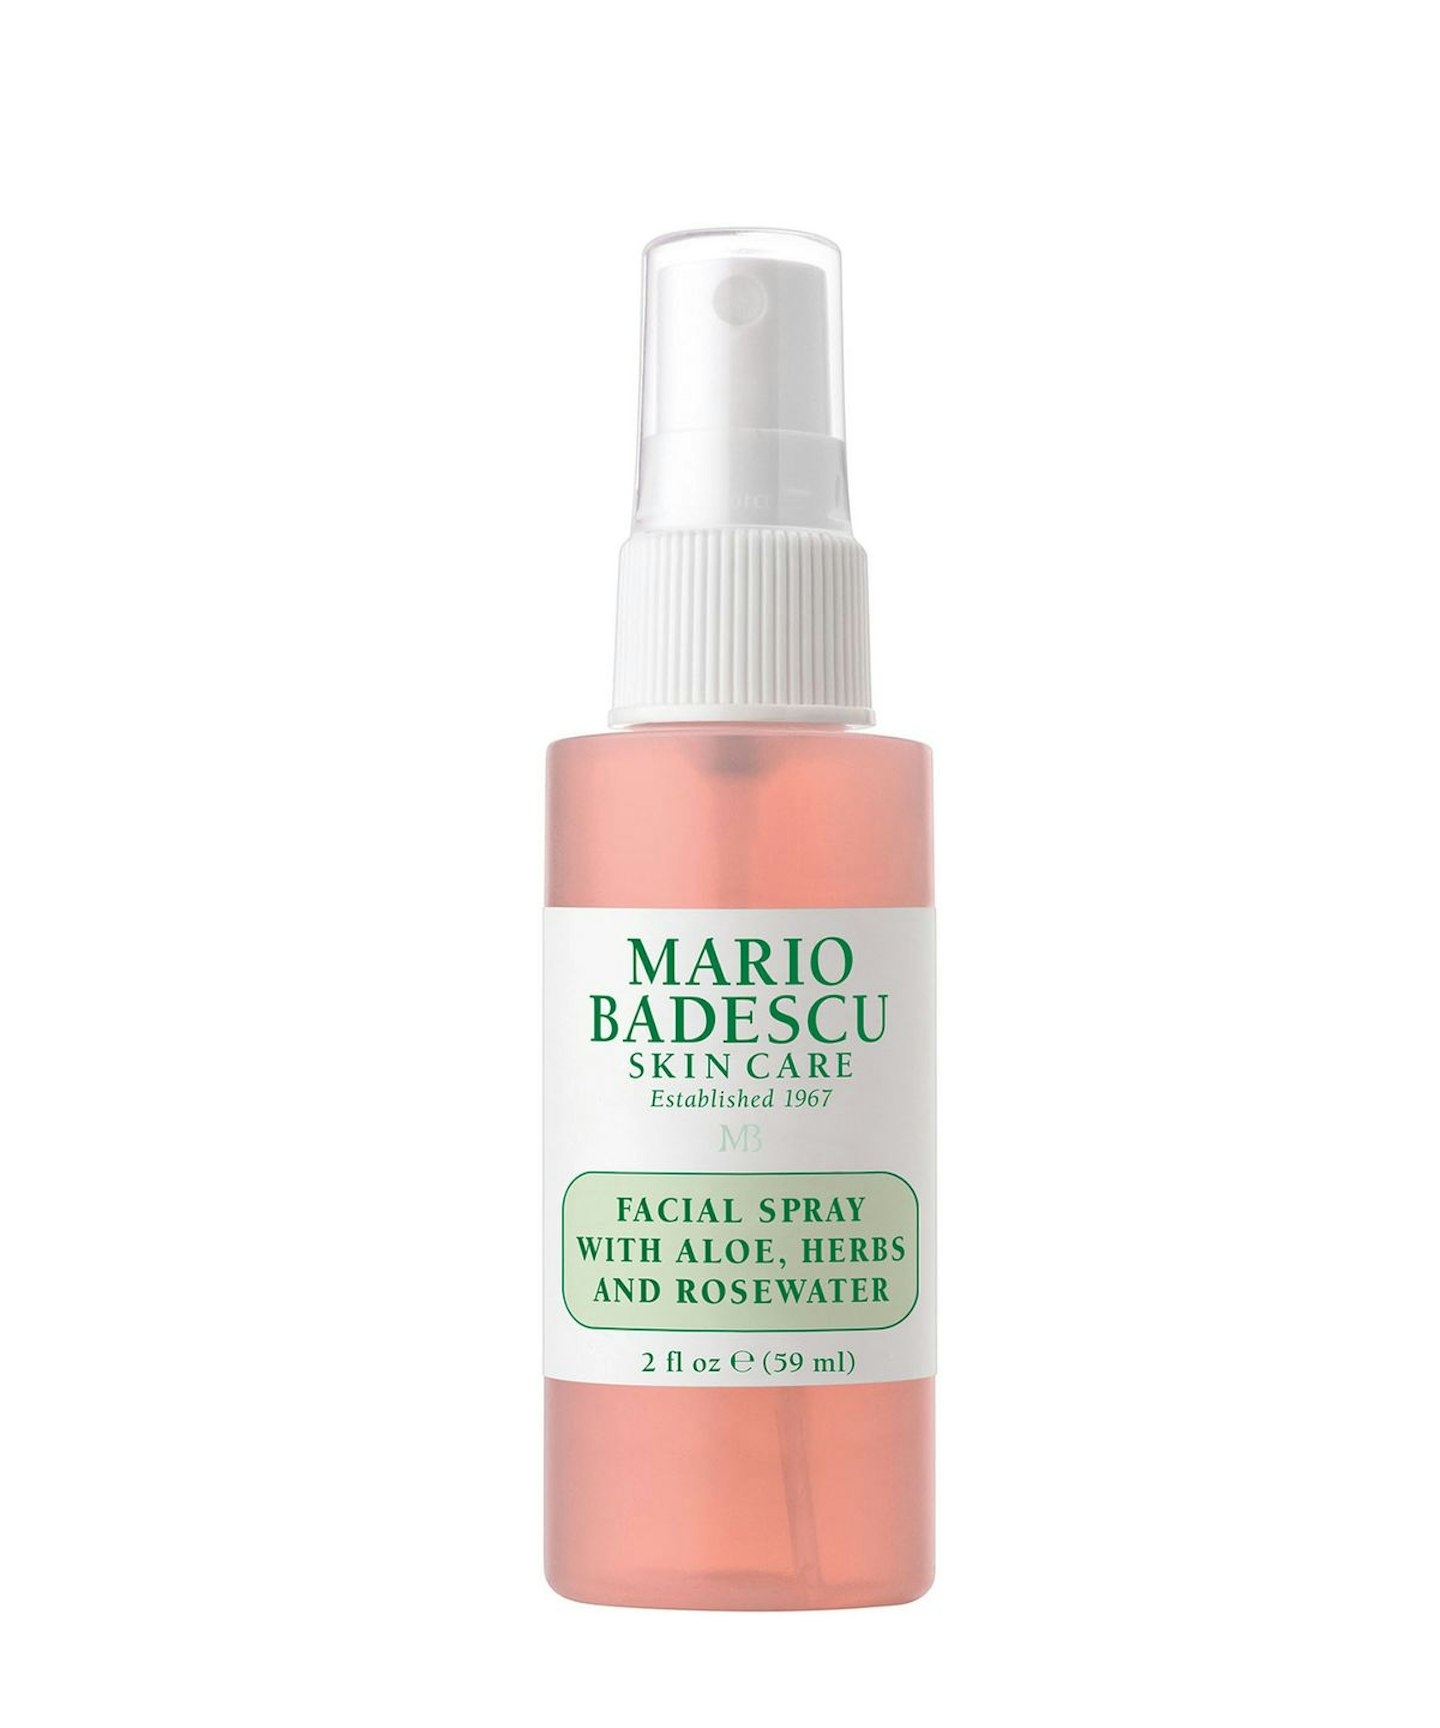 Mario Badescu Facial Spray with Aloe, Herbs & Rosewater, £4.75